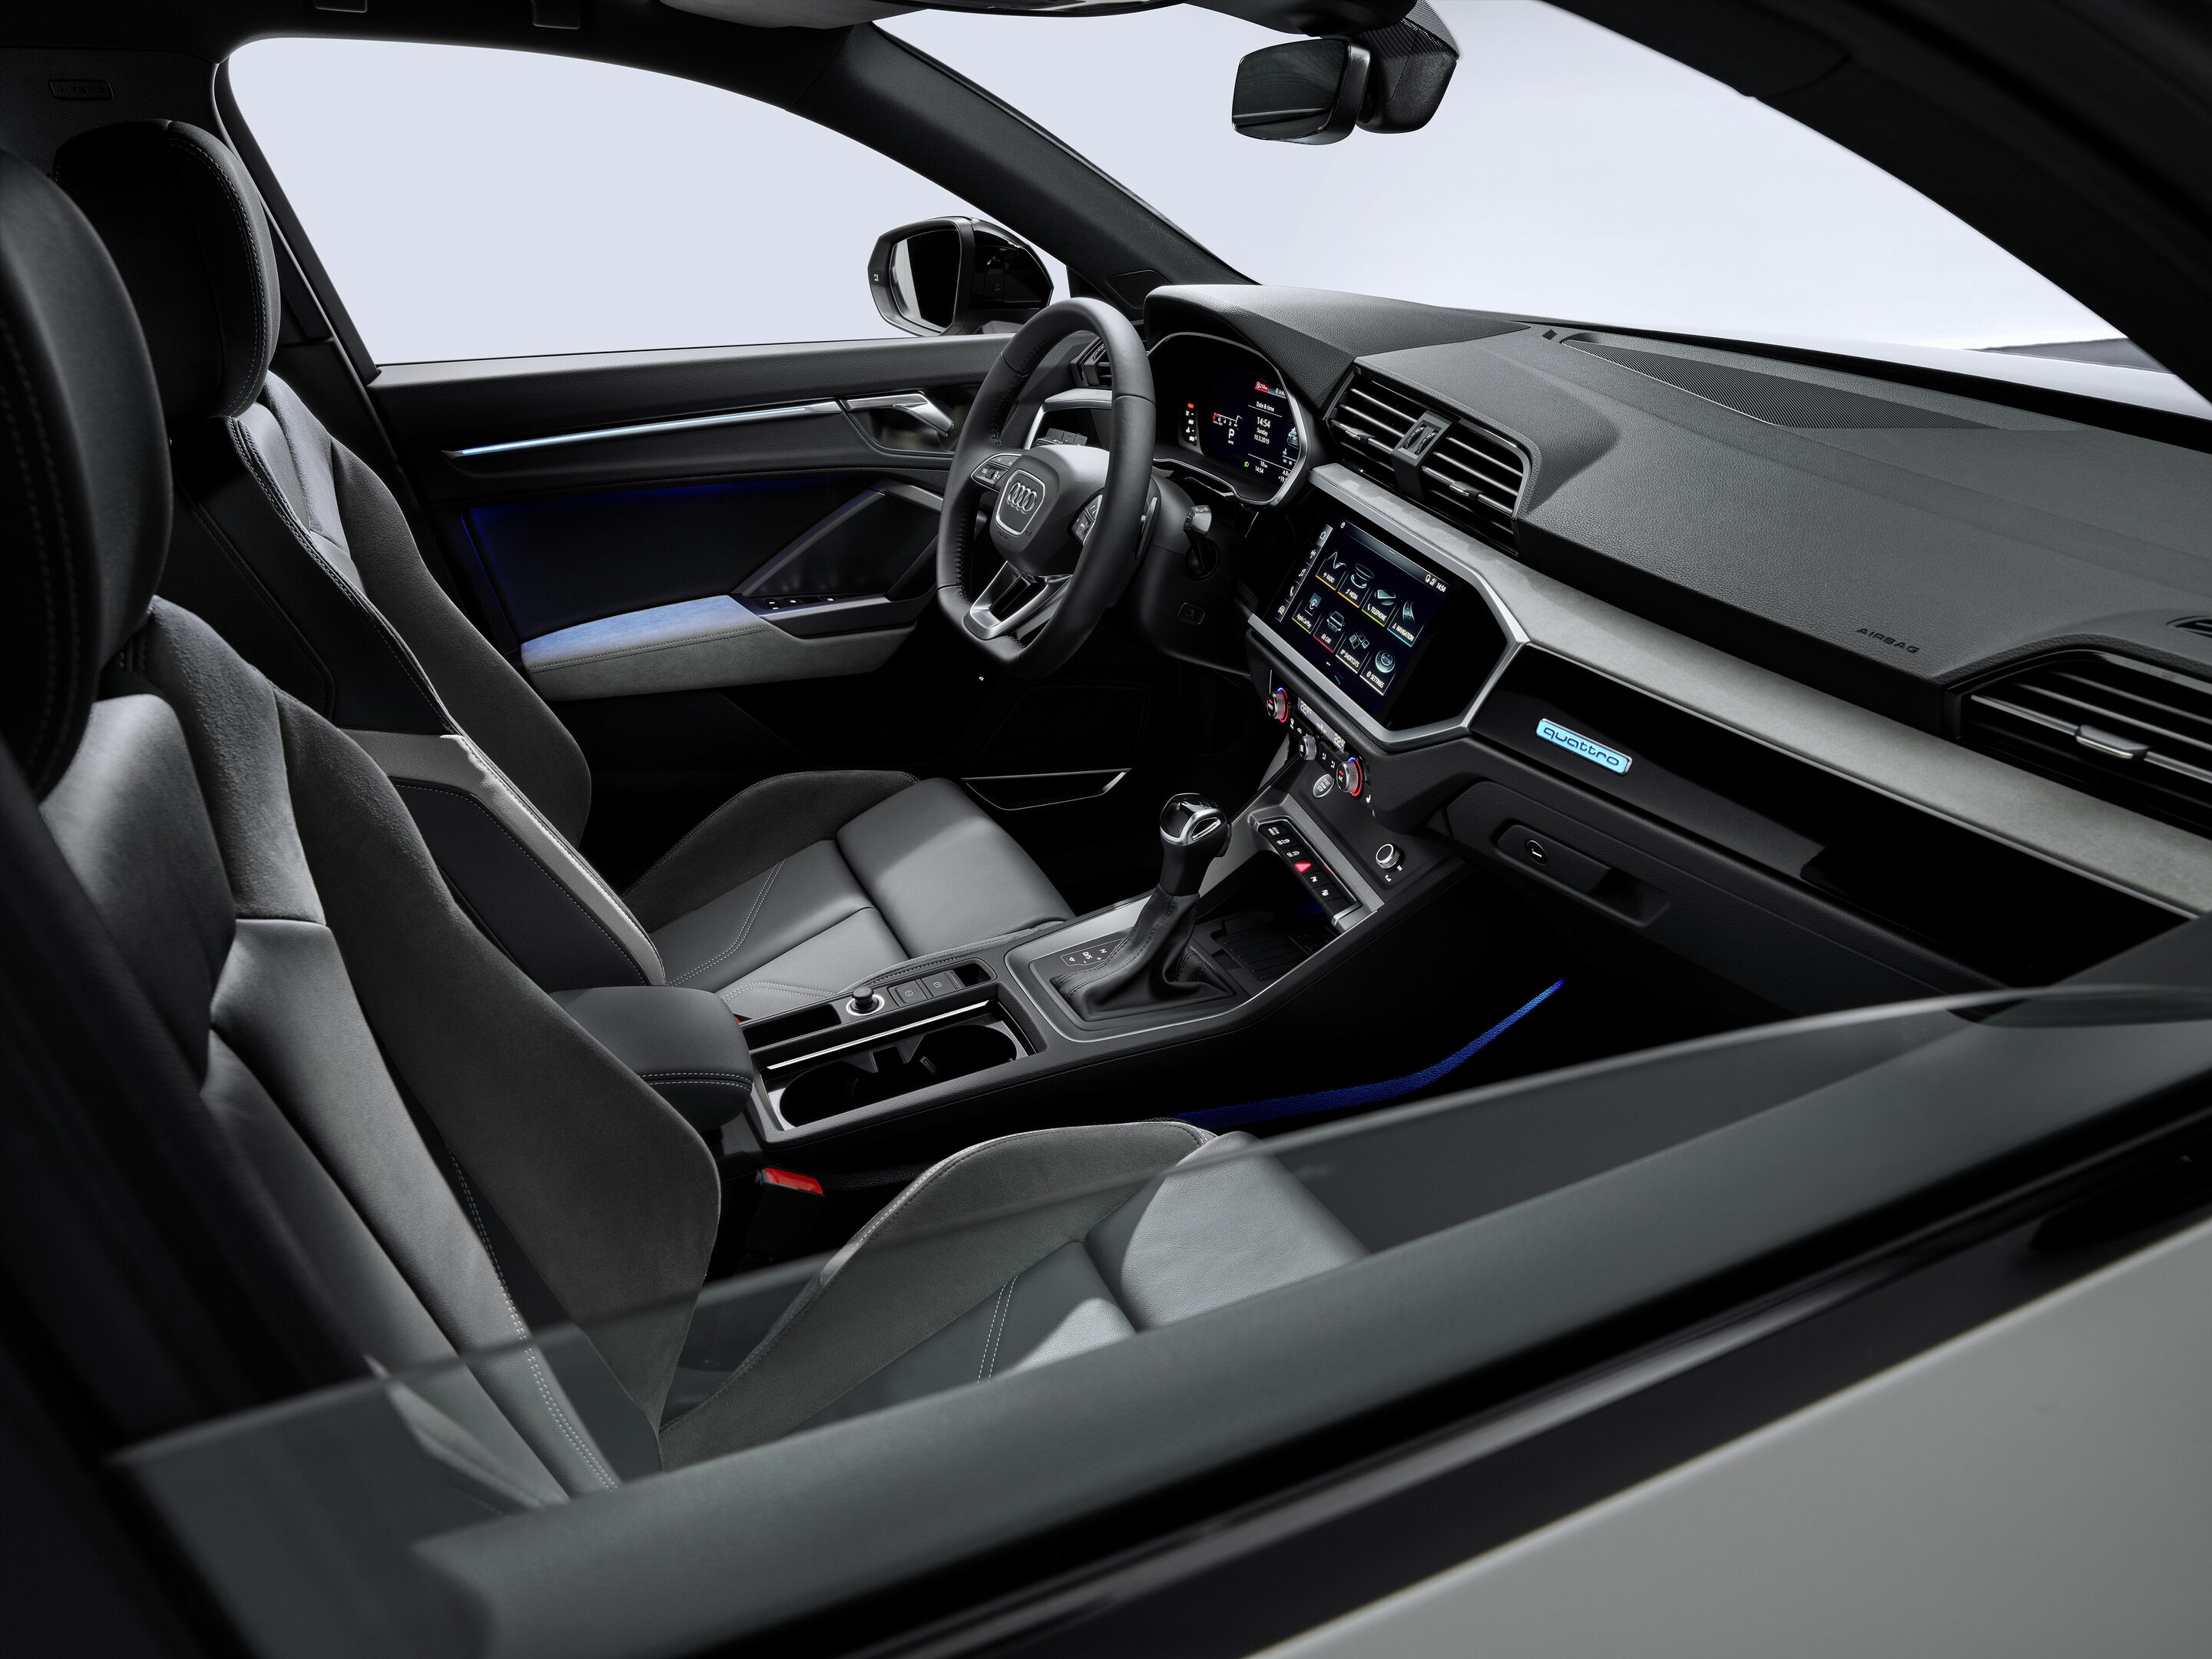 Audi Q3 Innenausstattung - AutoSprintCH